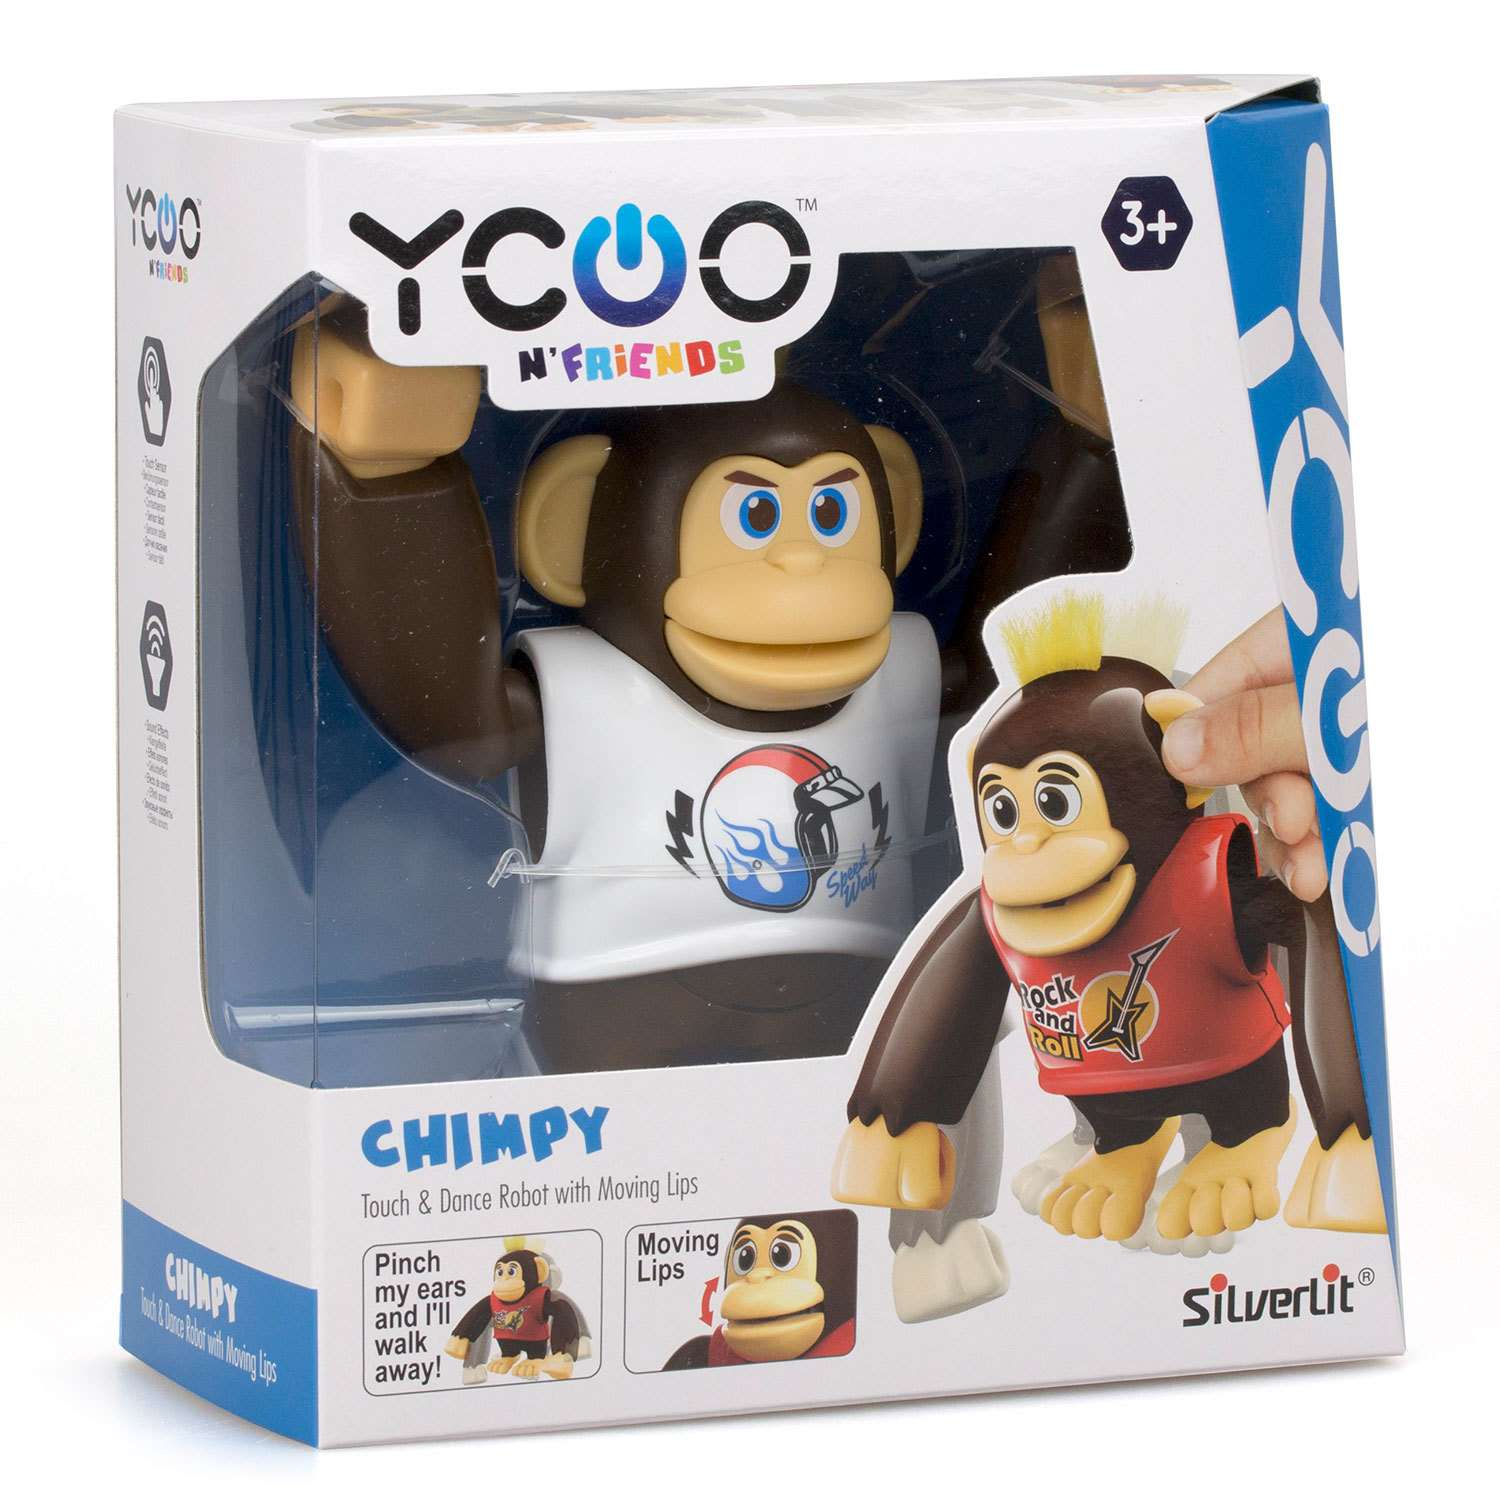 Робот обезьяна. Робот Silverlit Ycoo n'friends обезьяна Чимпи. Робот обезьяна Чимпи желтая. Ycoorobot игрушка. Игрушка робот обезьянка детском мире.